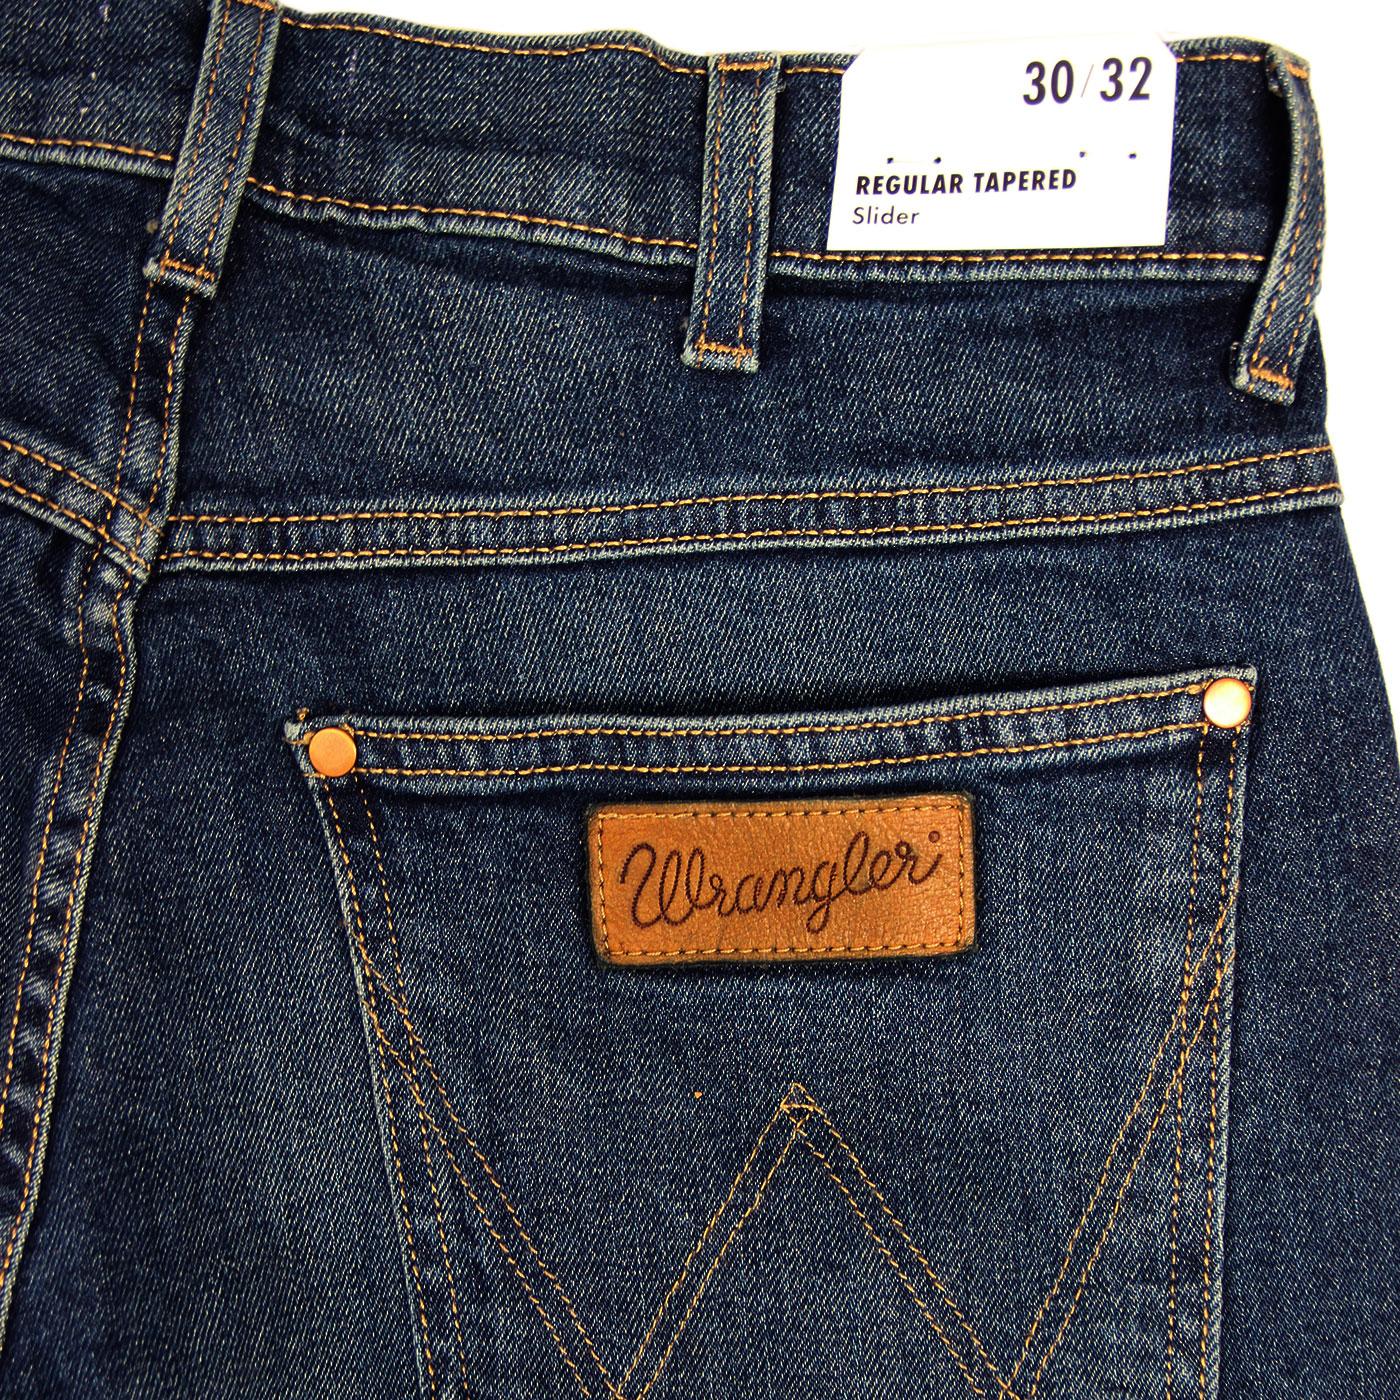 Arriba 81+ imagen wrangler jeans tapered - Thptnganamst.edu.vn